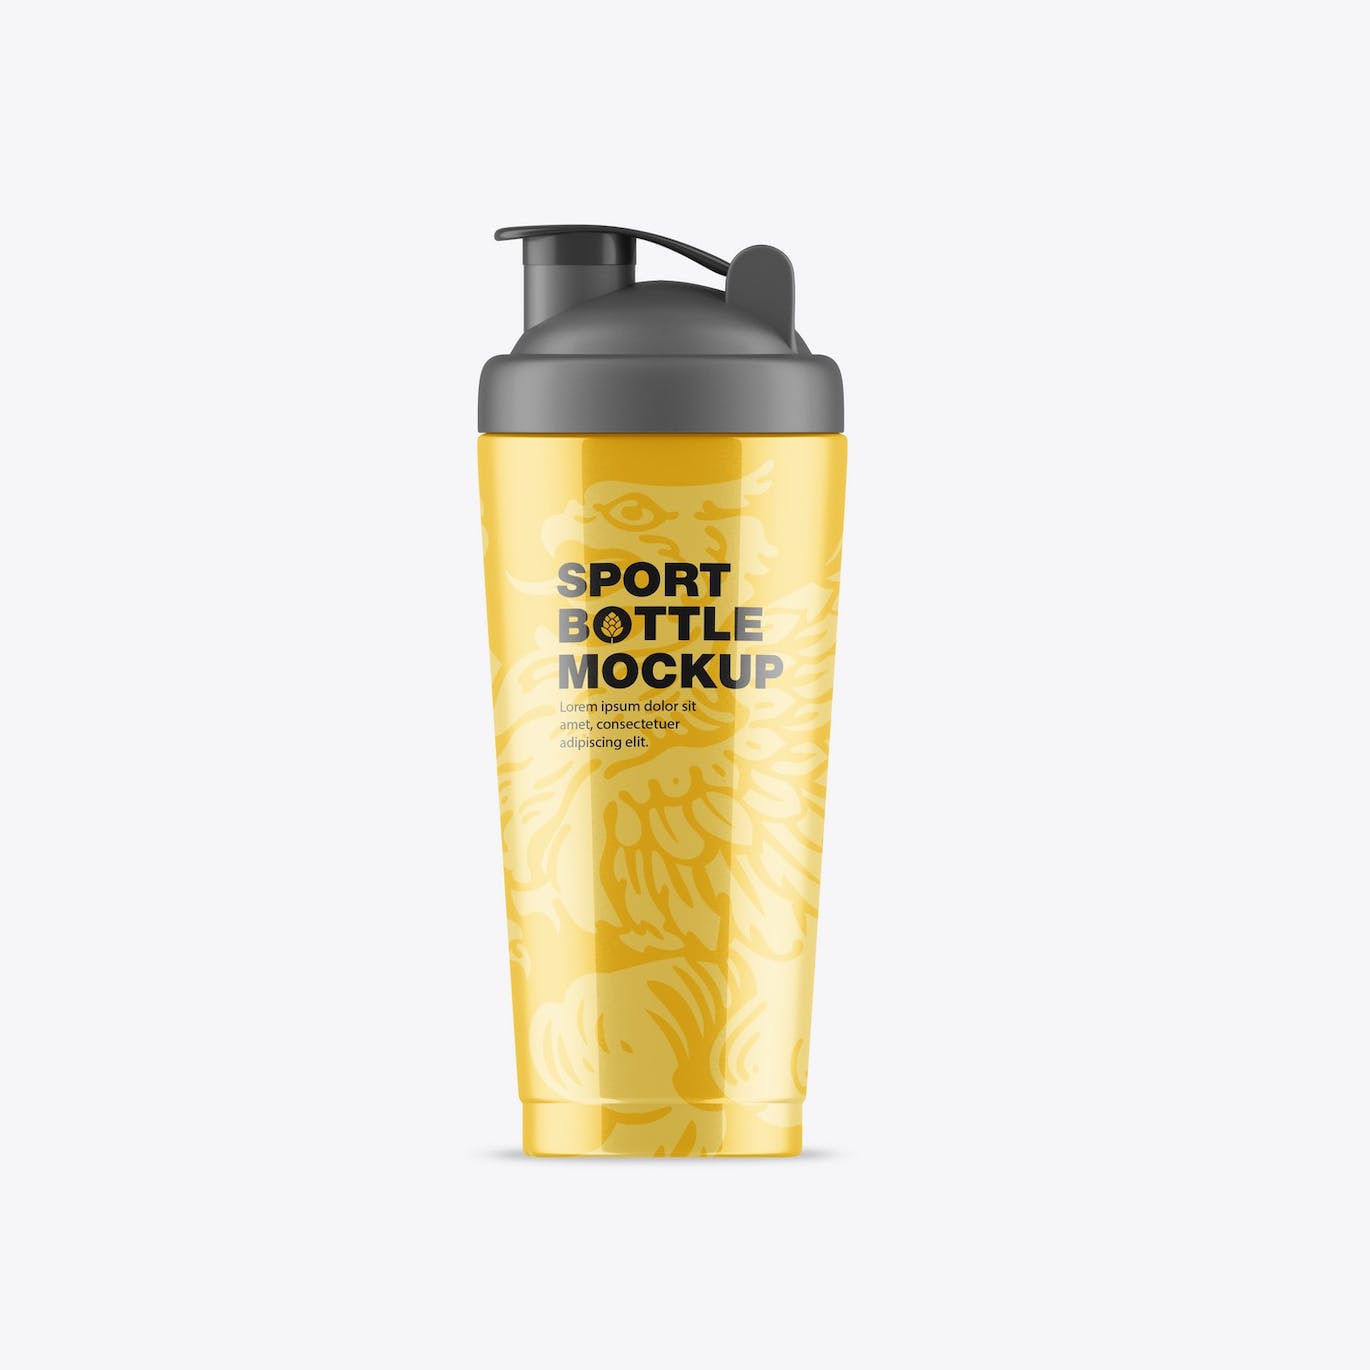 健身房运动水瓶包装设计样机 Gym Bottle Mockup 样机素材 第2张